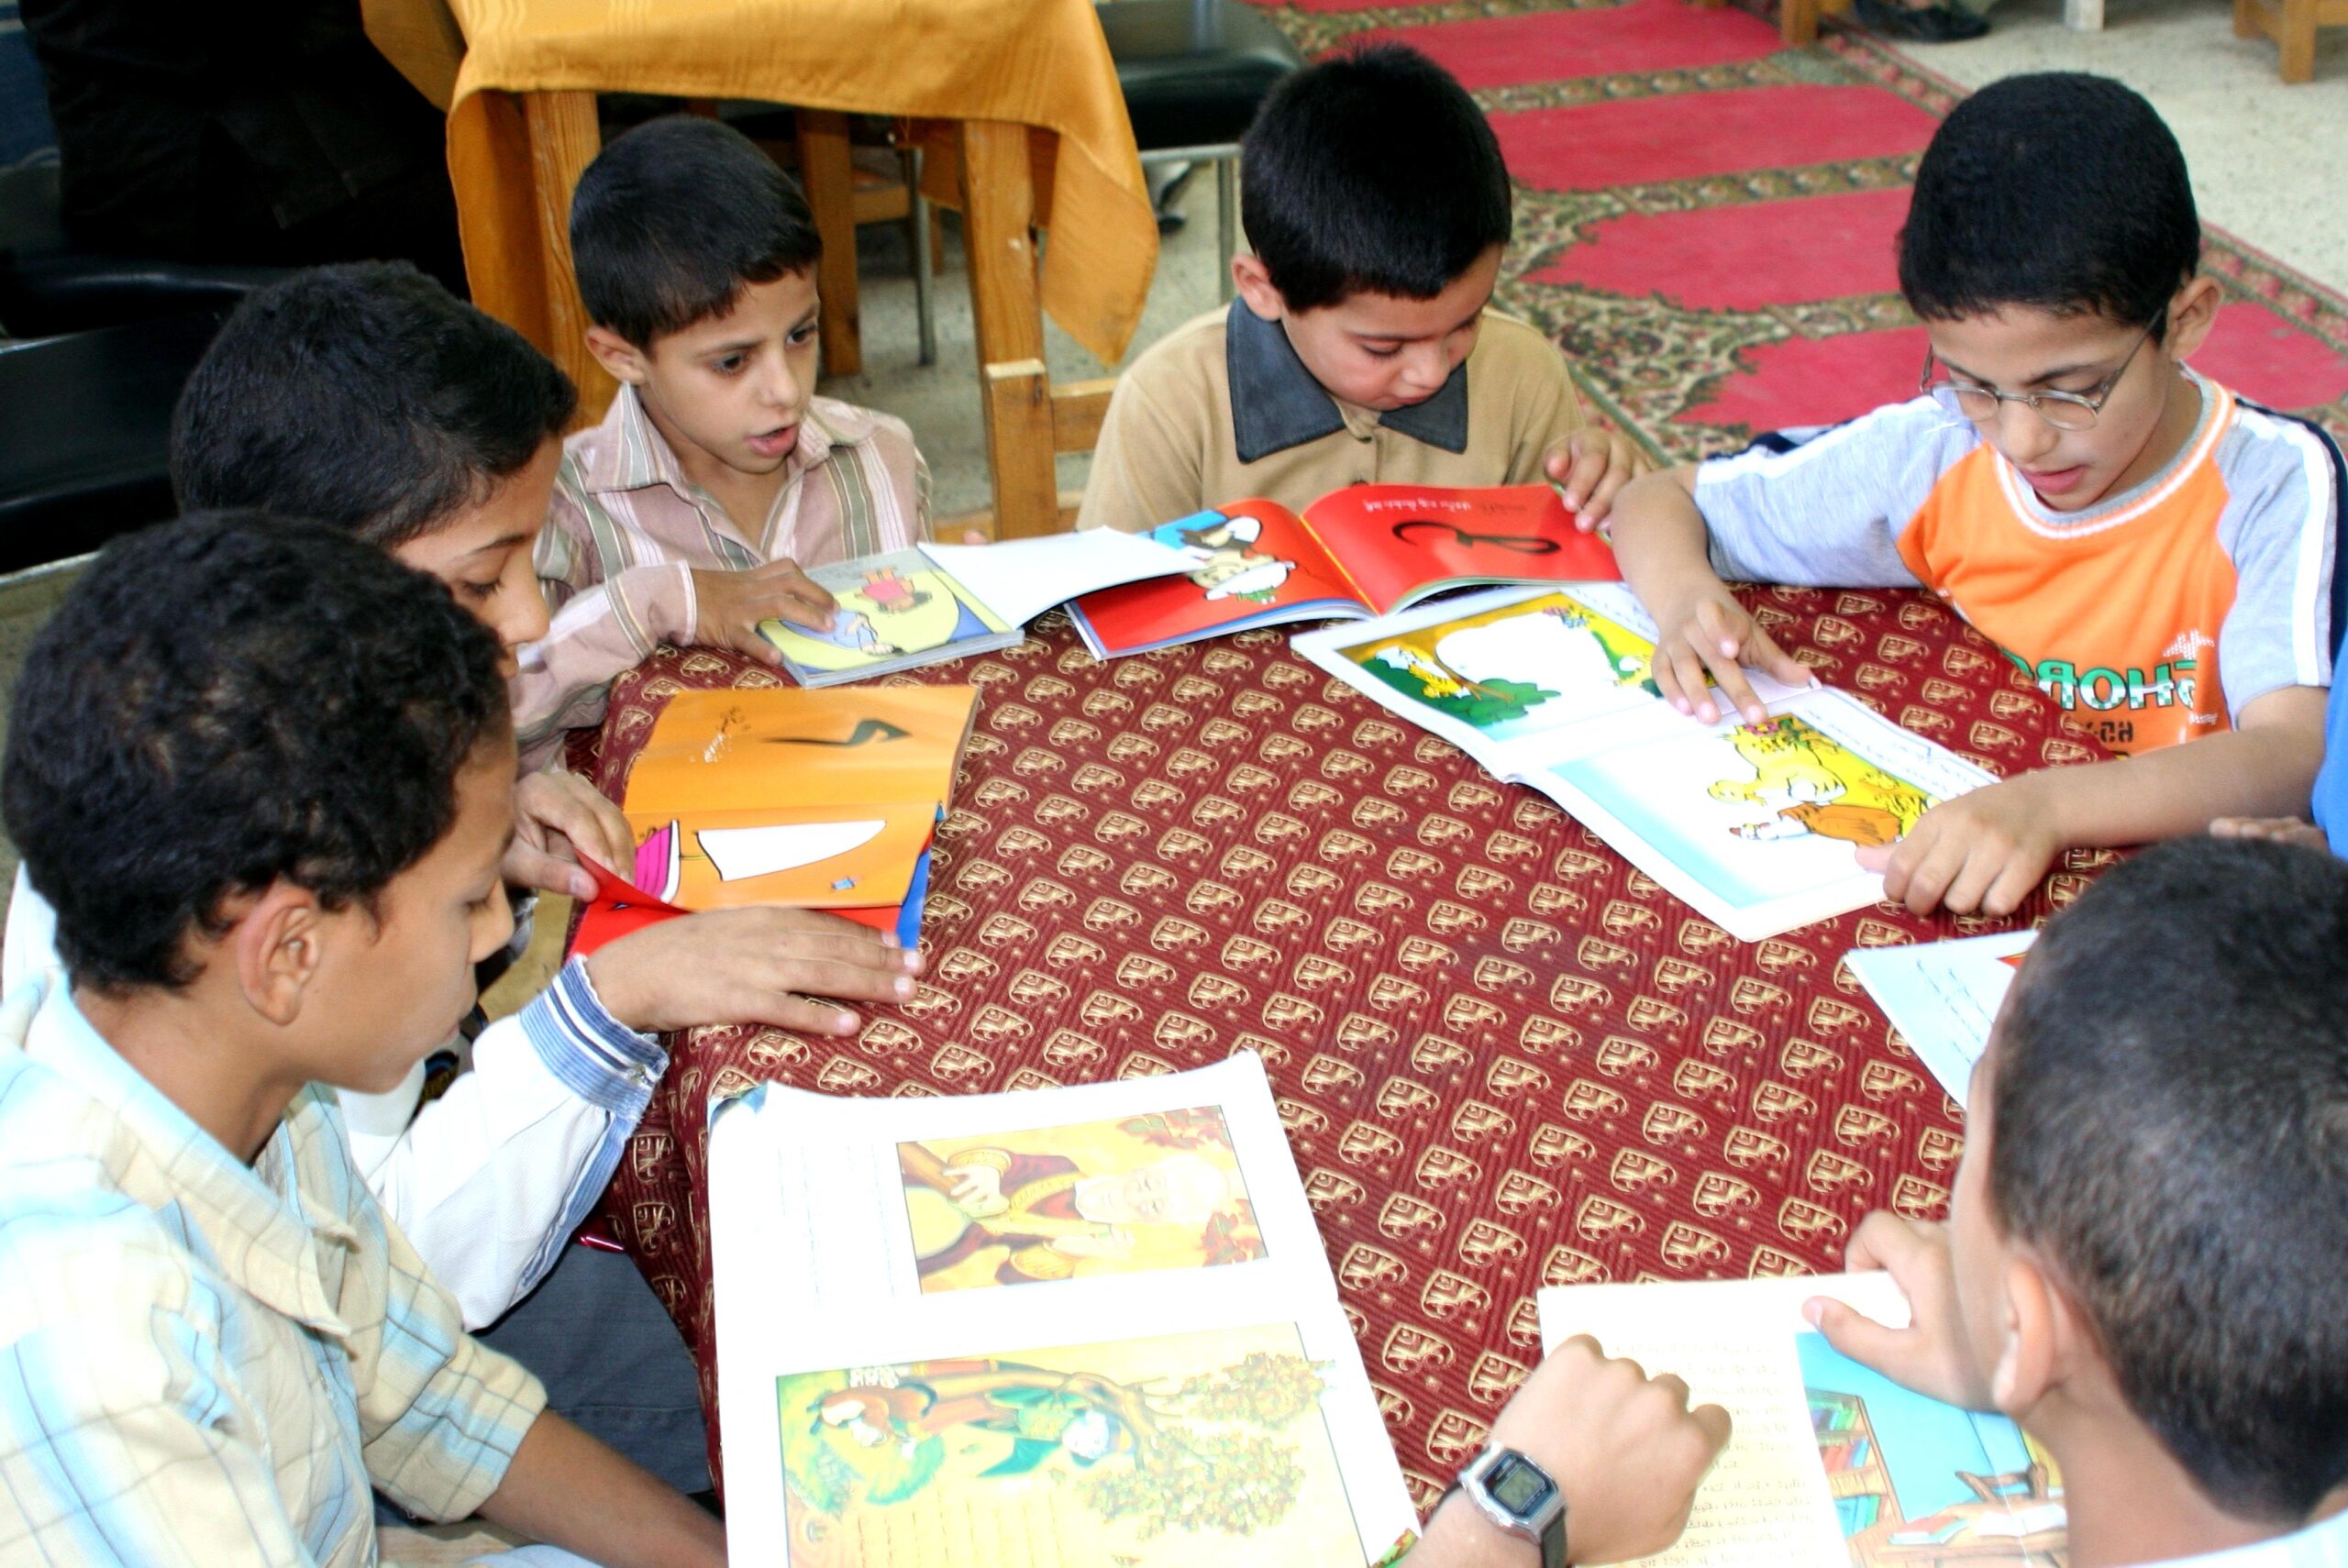 Meninos com livros infantis sobre a mesa. Imagem ilustrativa texto importância do livro infantil.